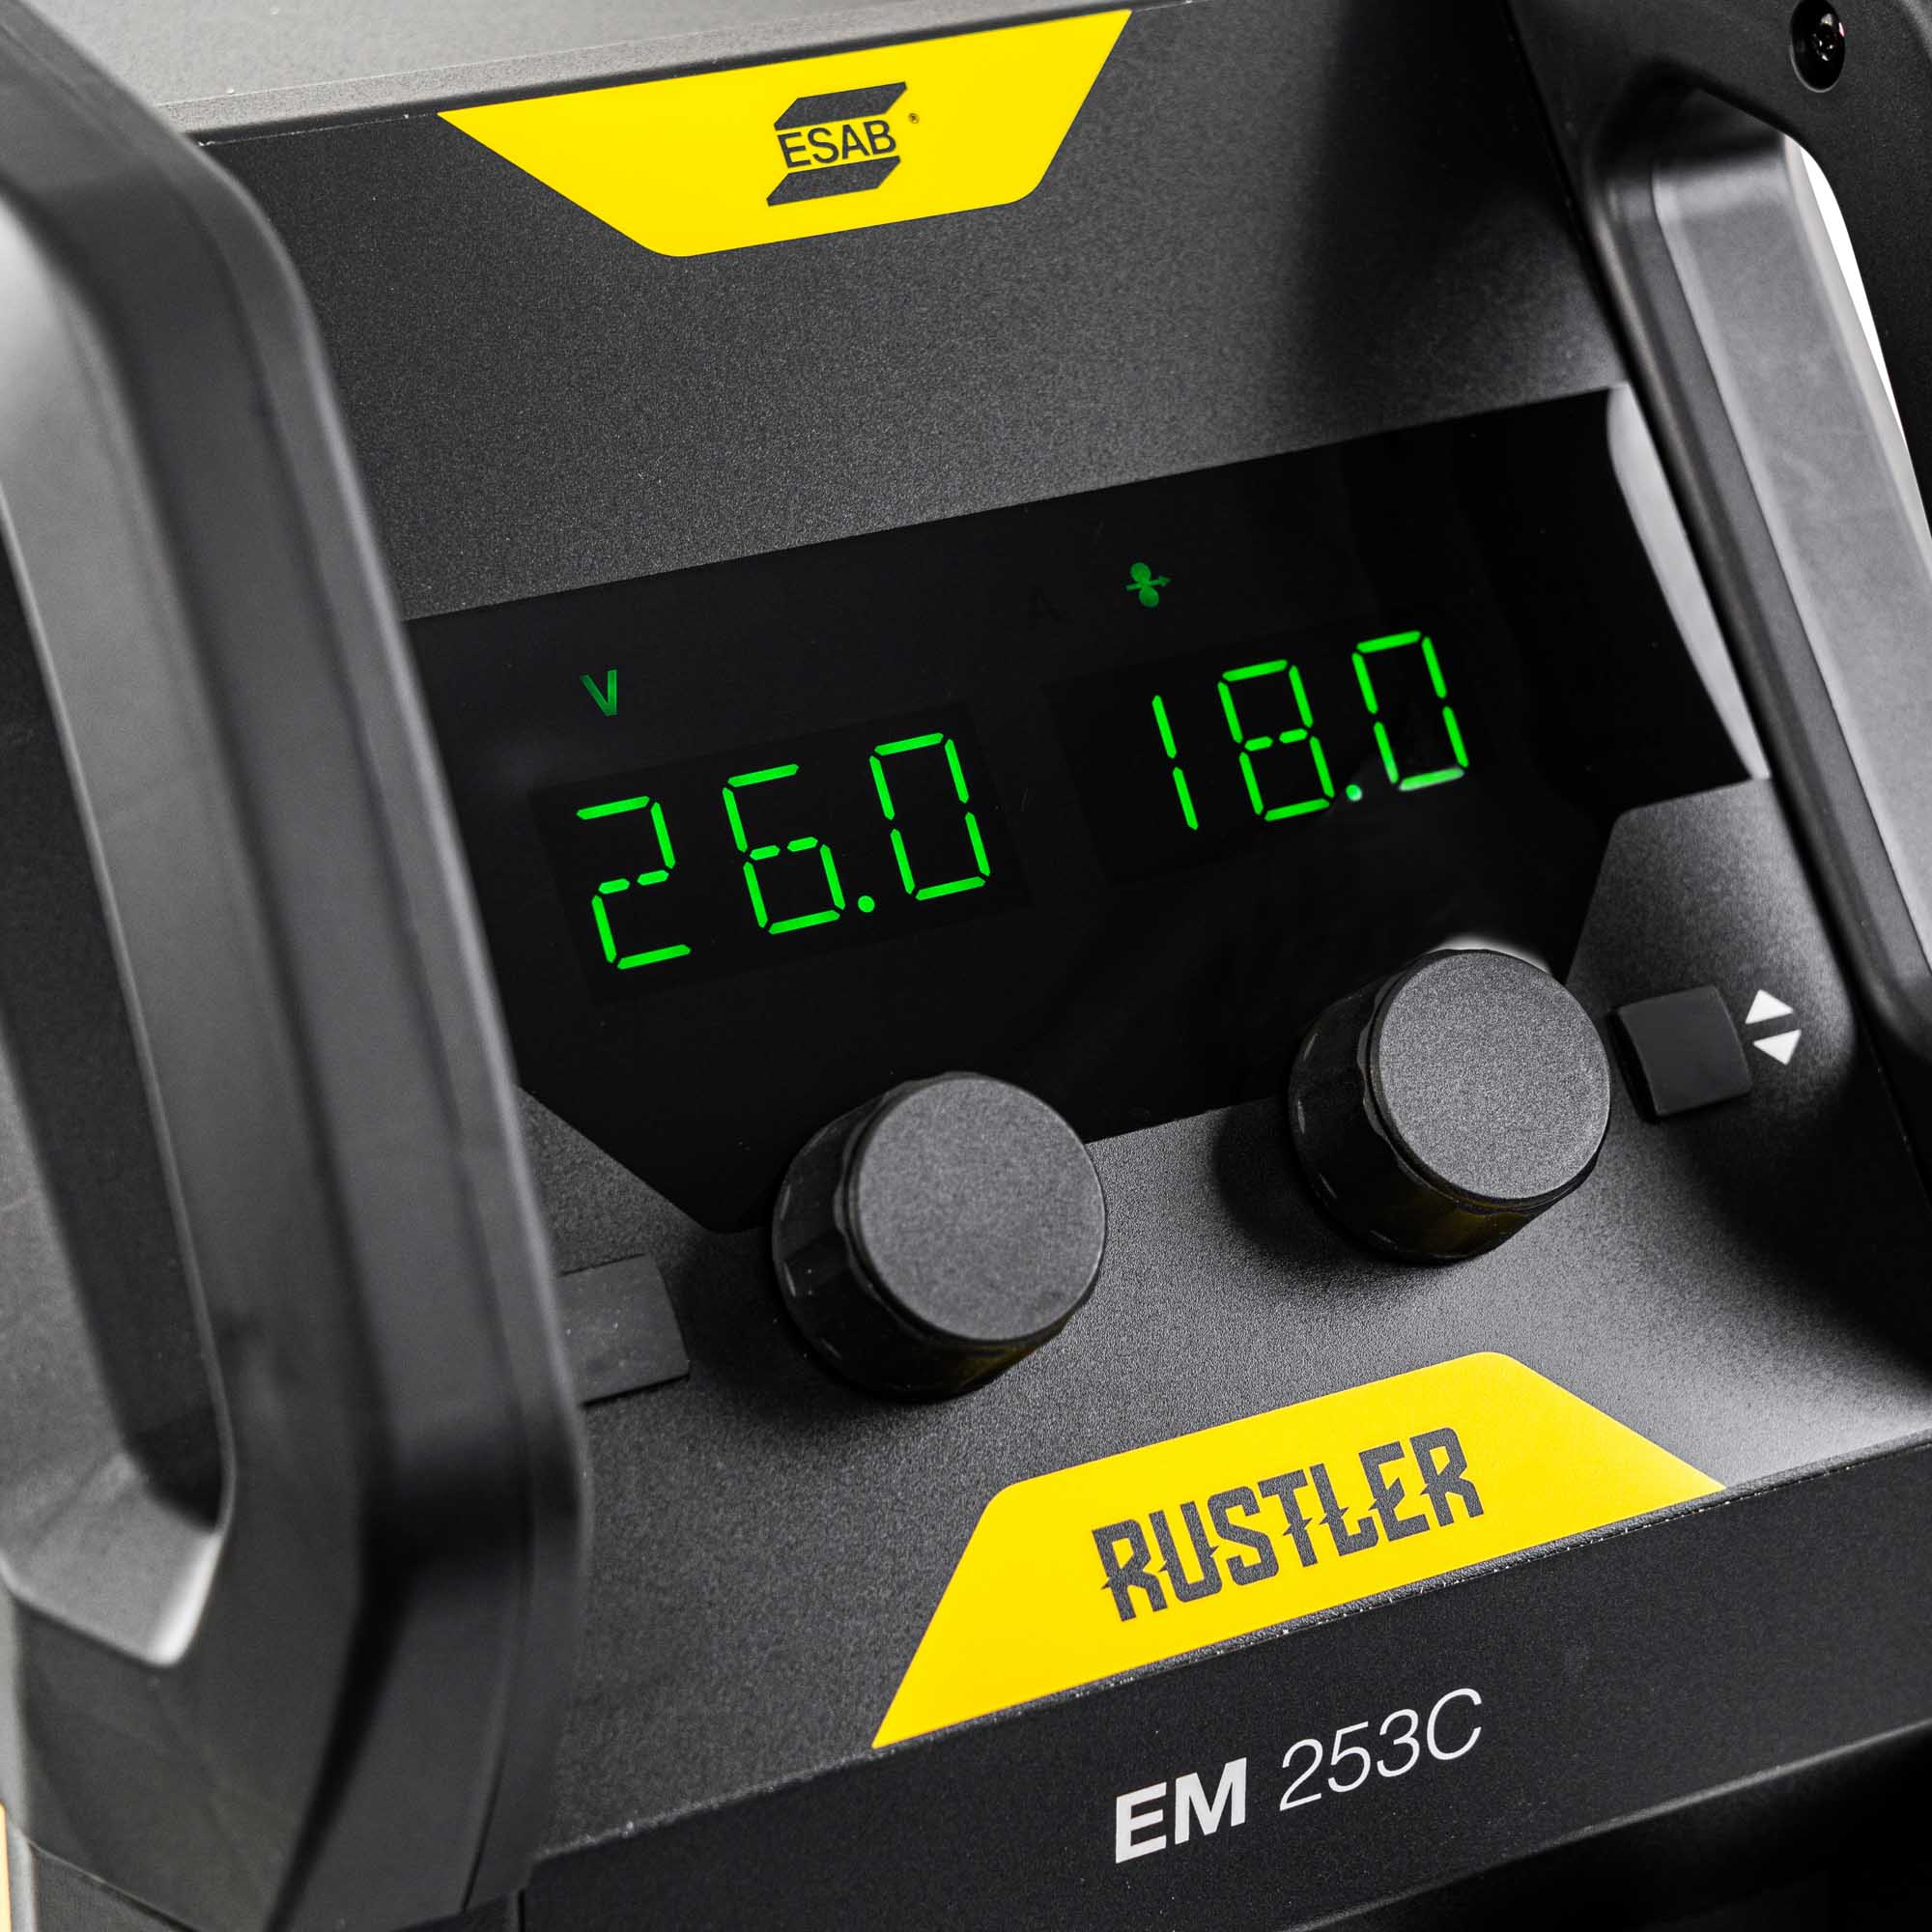 ESAB Rustler EM 253C